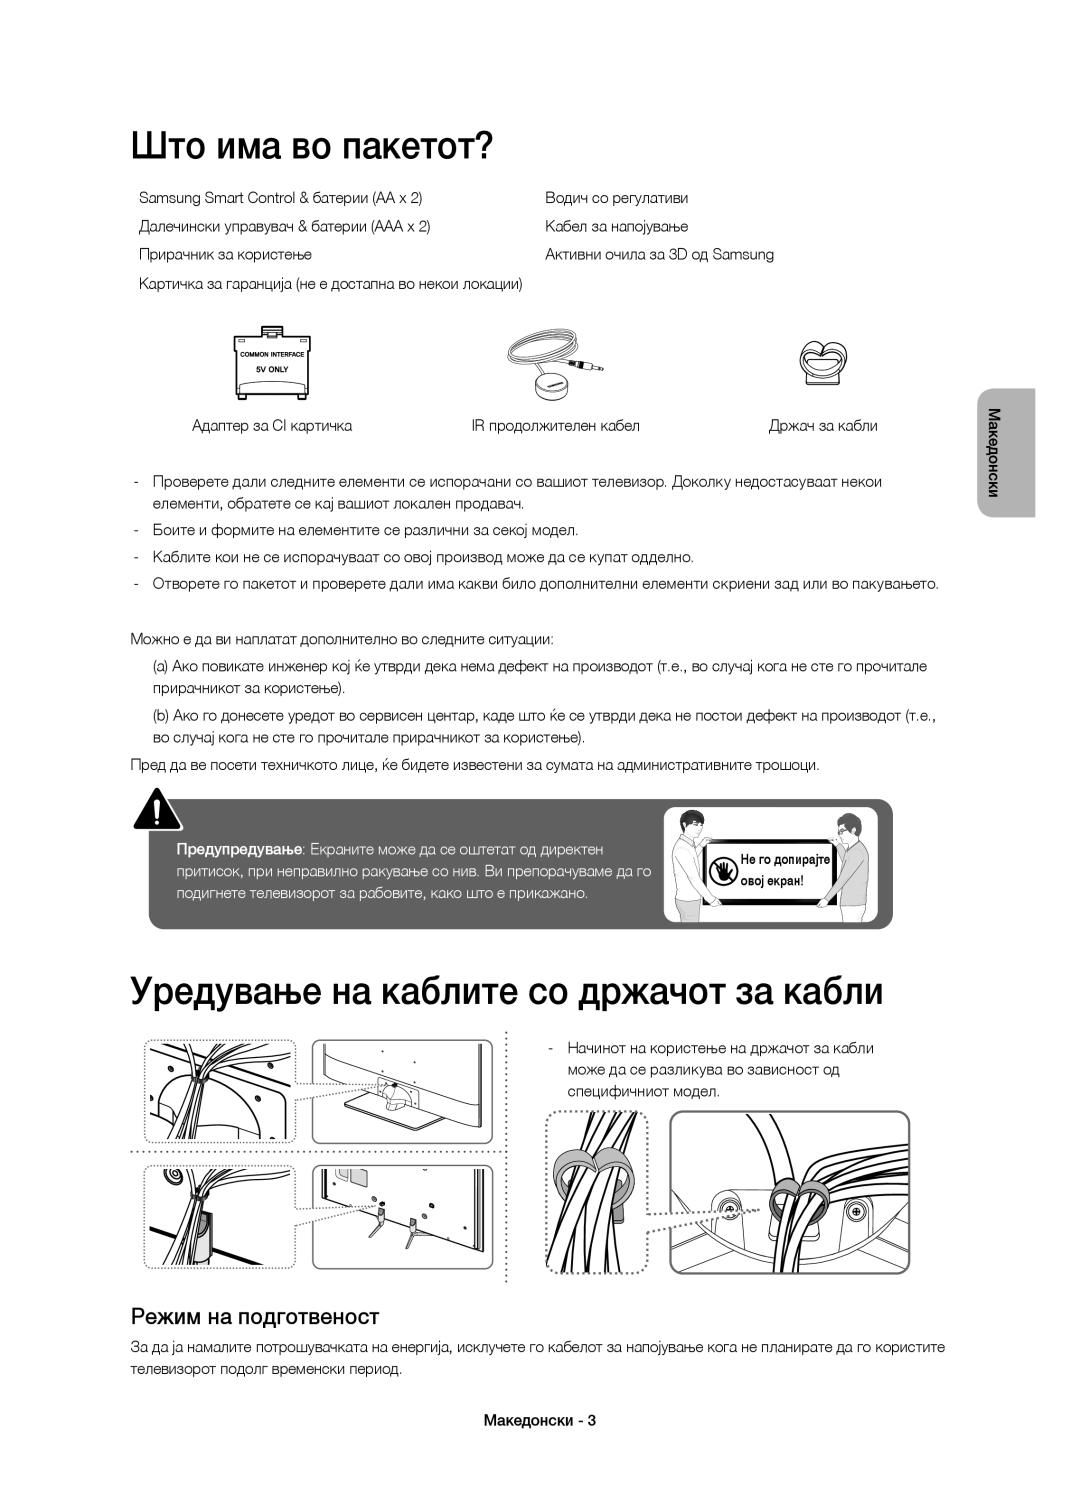 Samsung UE48H6670SLXXH manual Што има во пакетот?, Уредување на каблите со држачот за кабли, Режим на подготвеност 